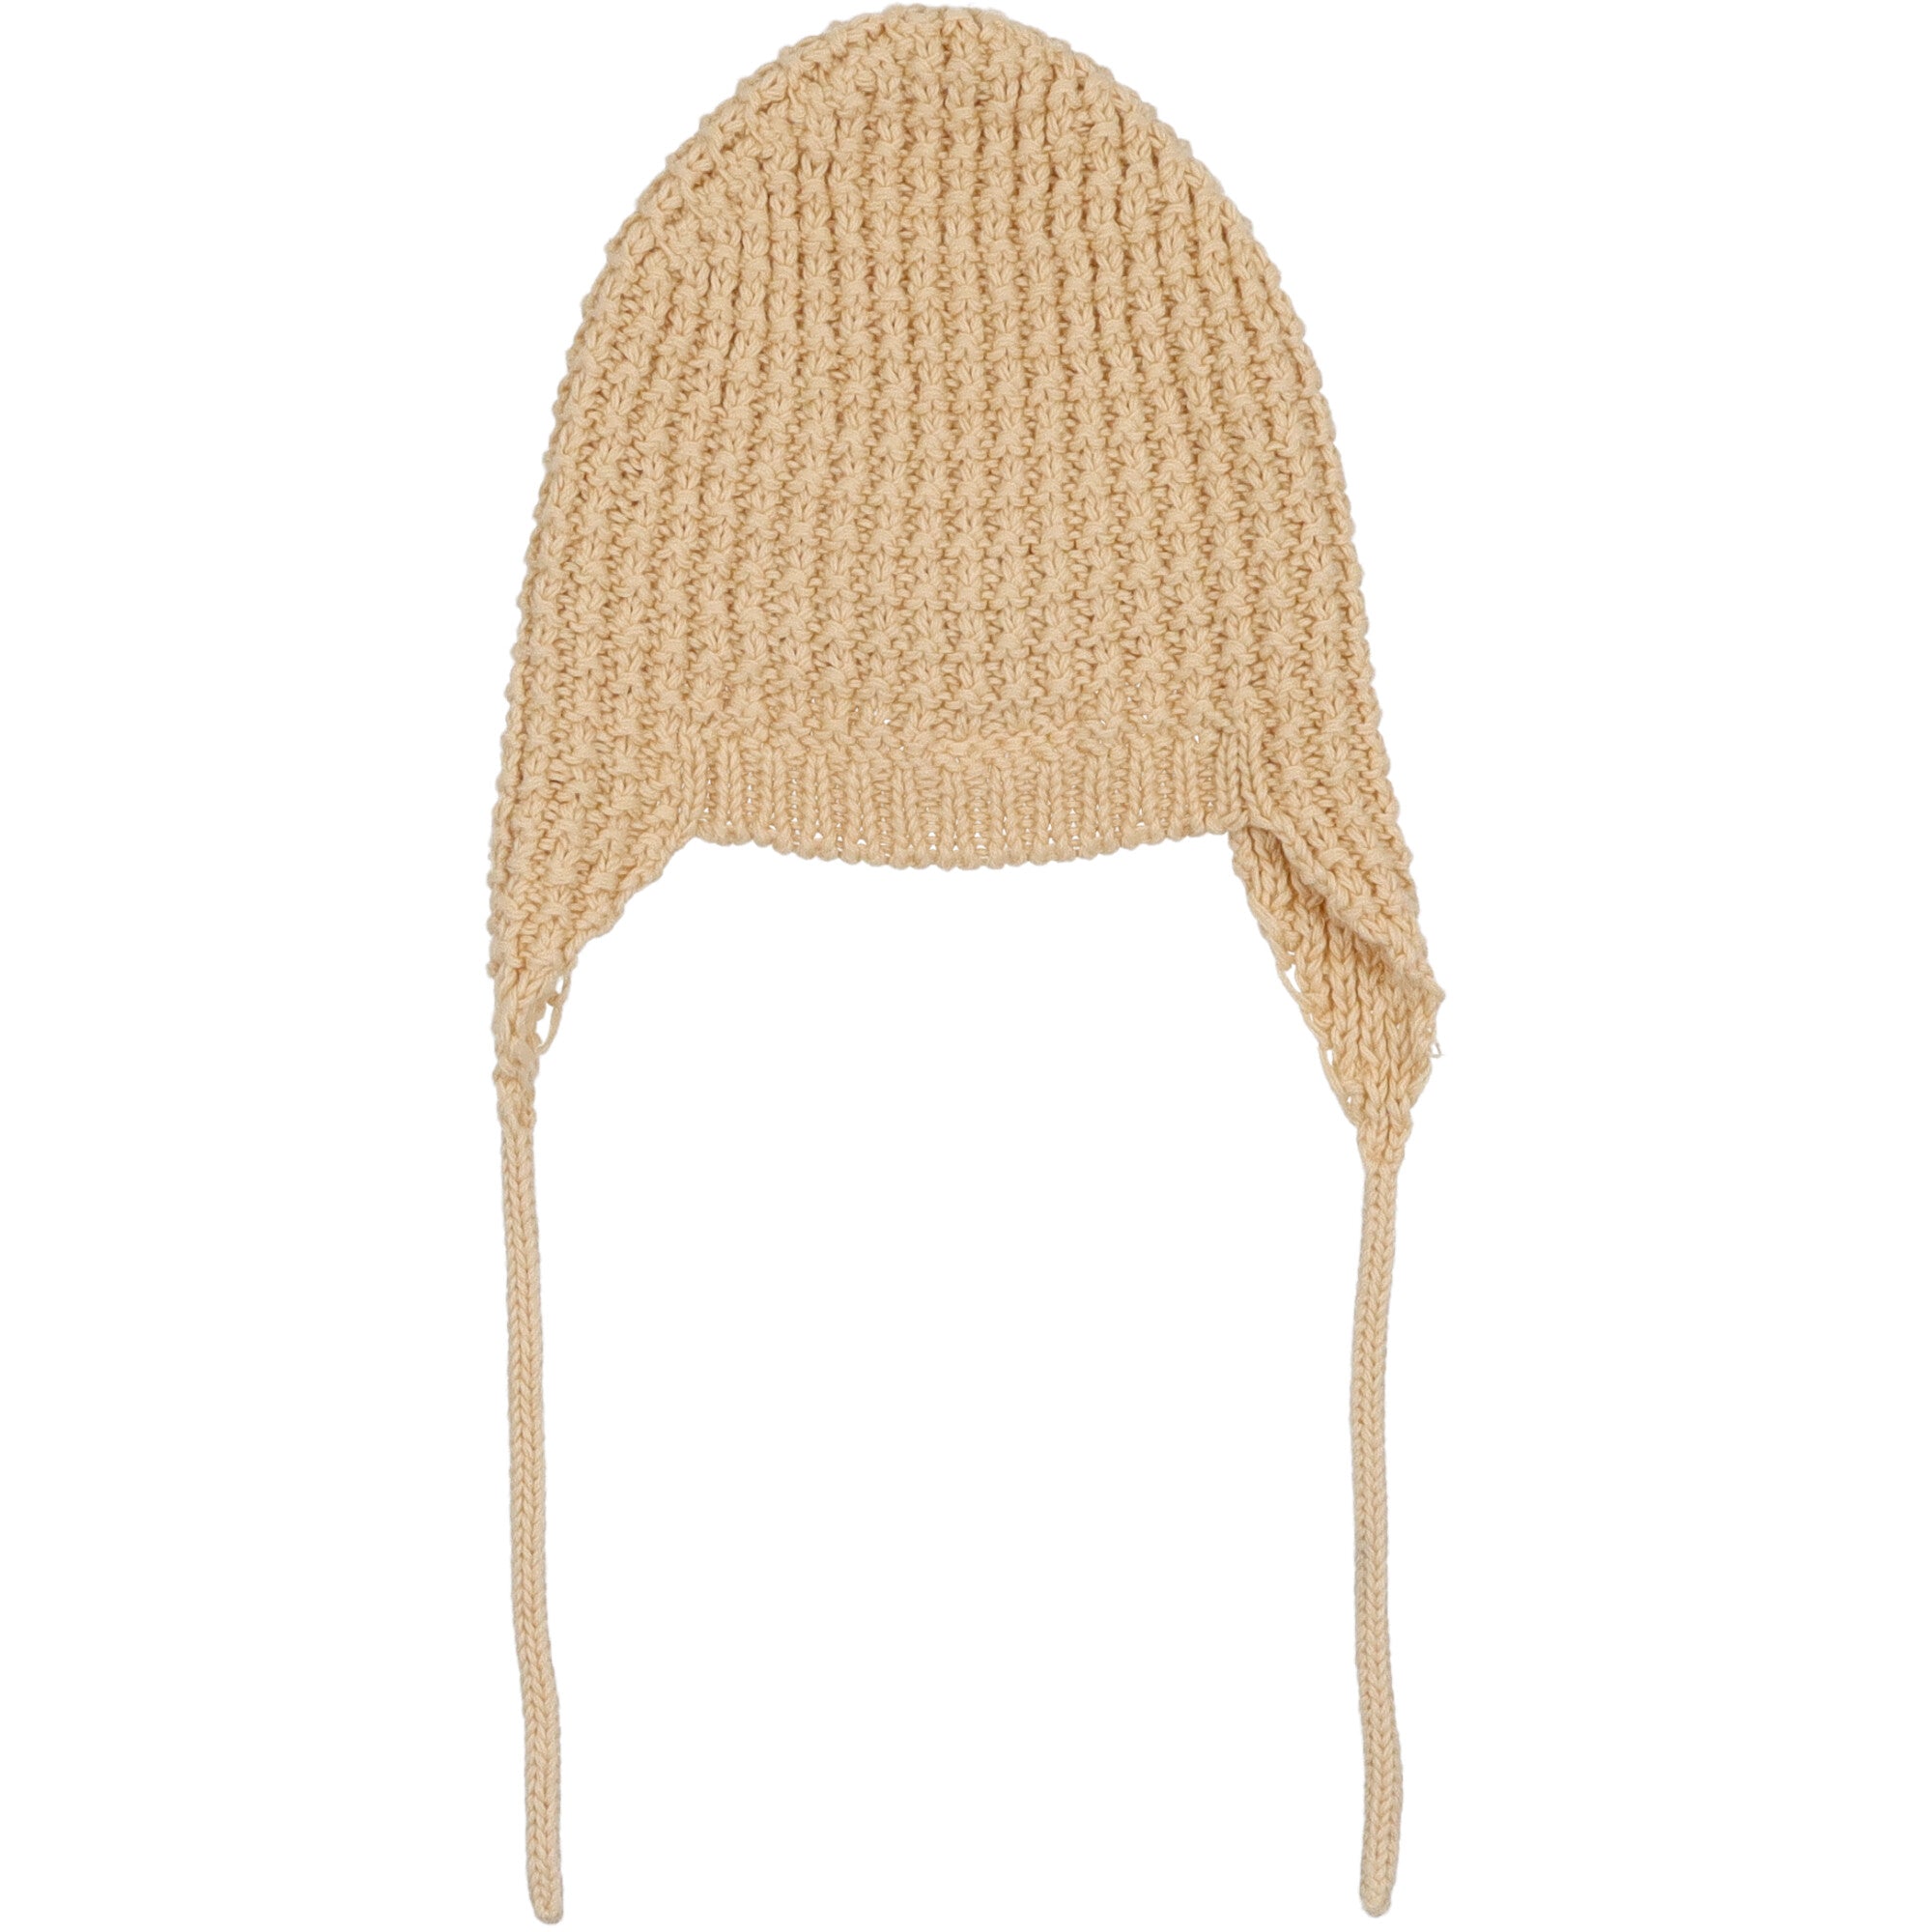 Maglione-cappello-cotone-invernale